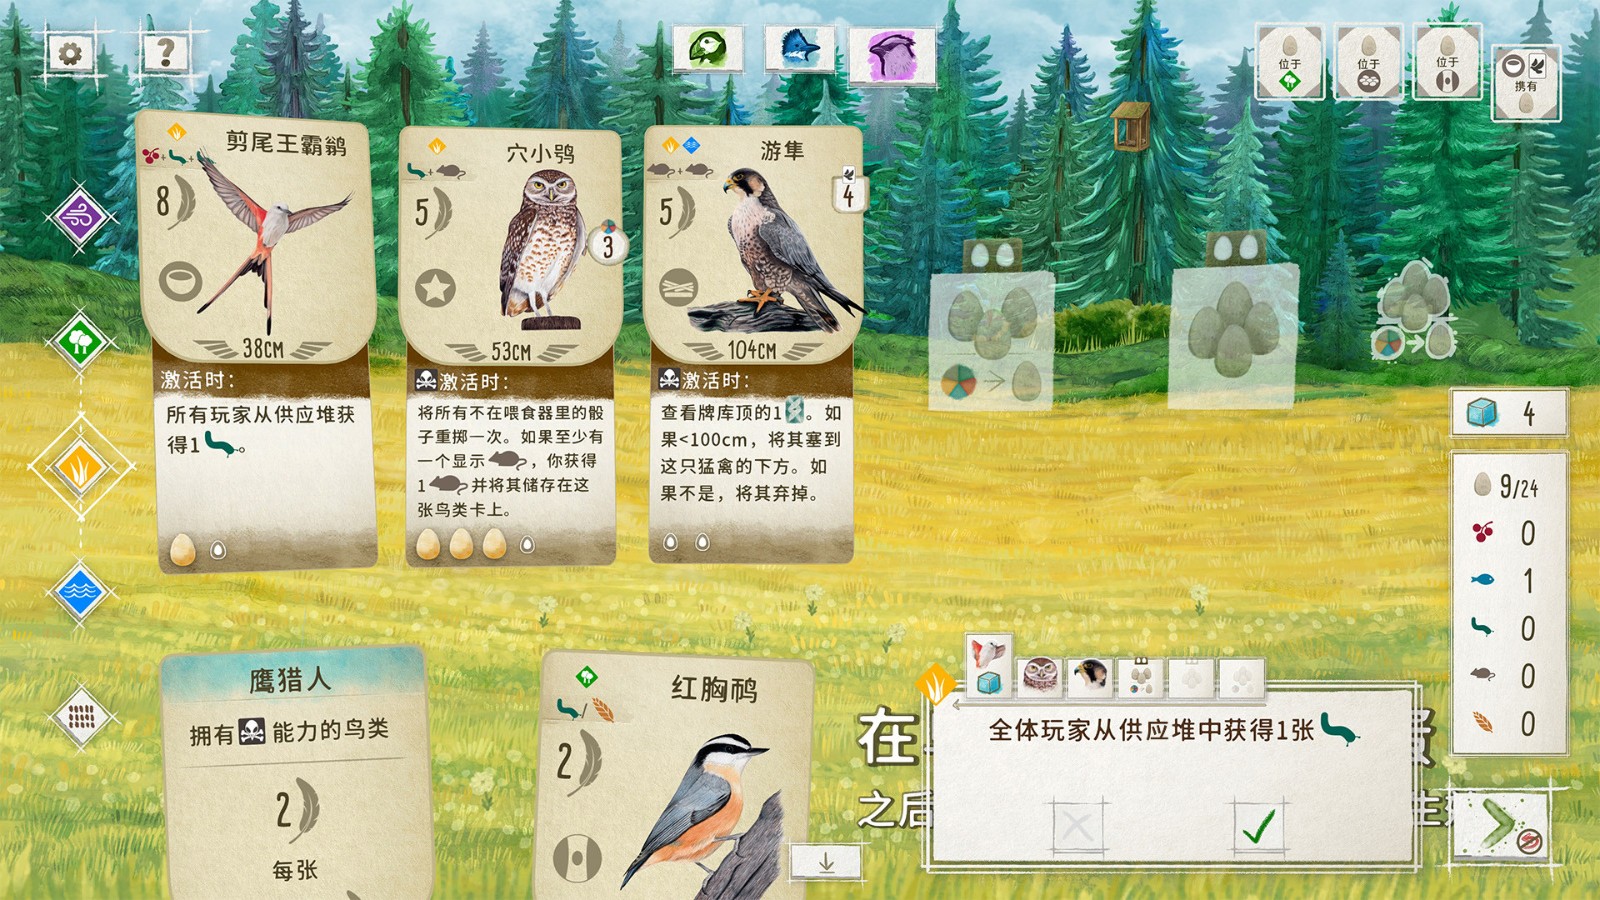 鸟类策略卡牌游戏《展翅翱翔》将登陆PS4和PS5